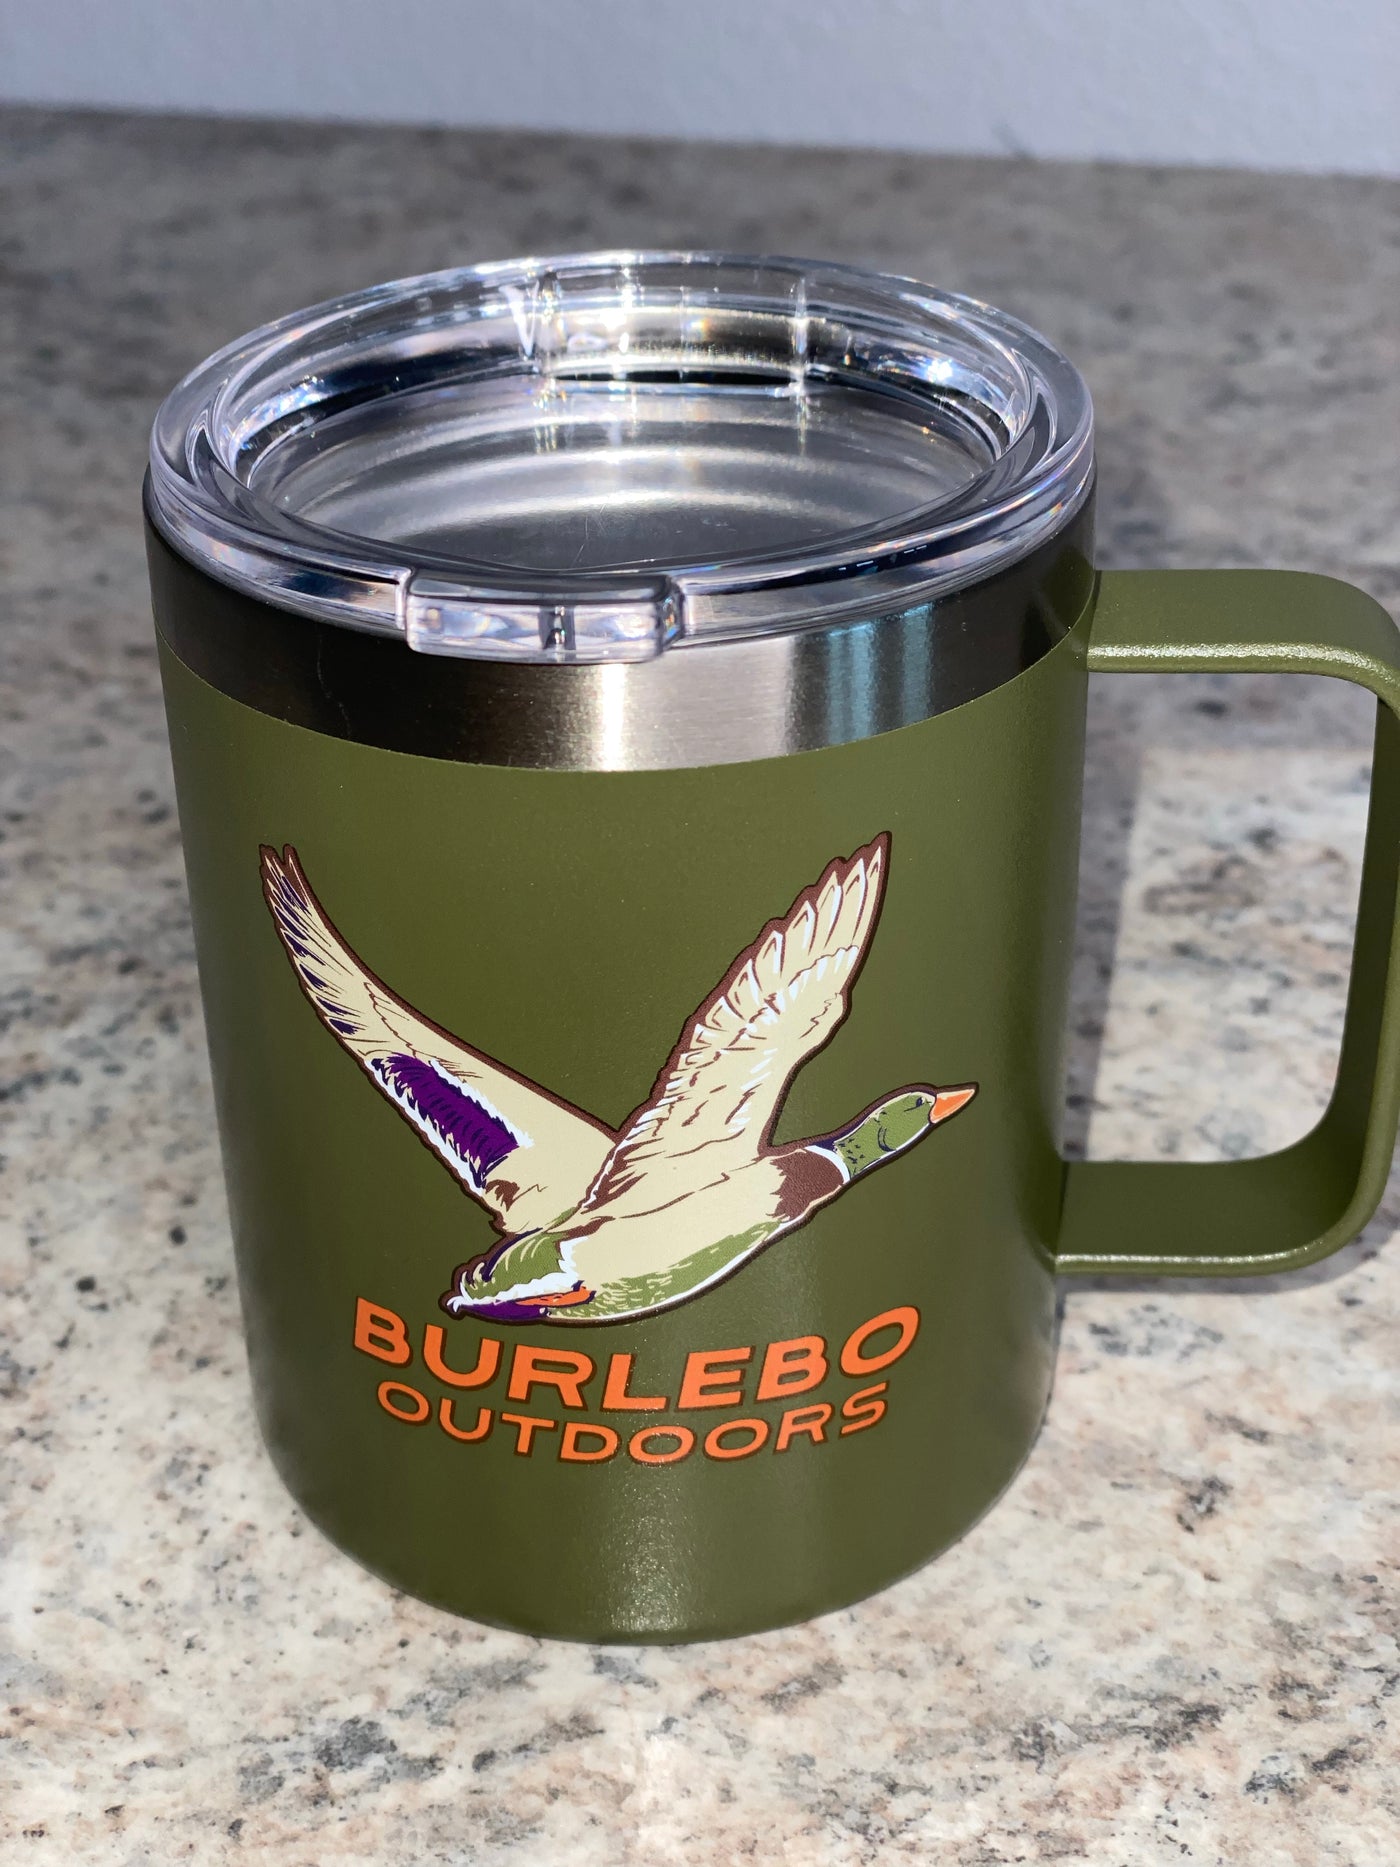 Burlebo Outdoors Mug